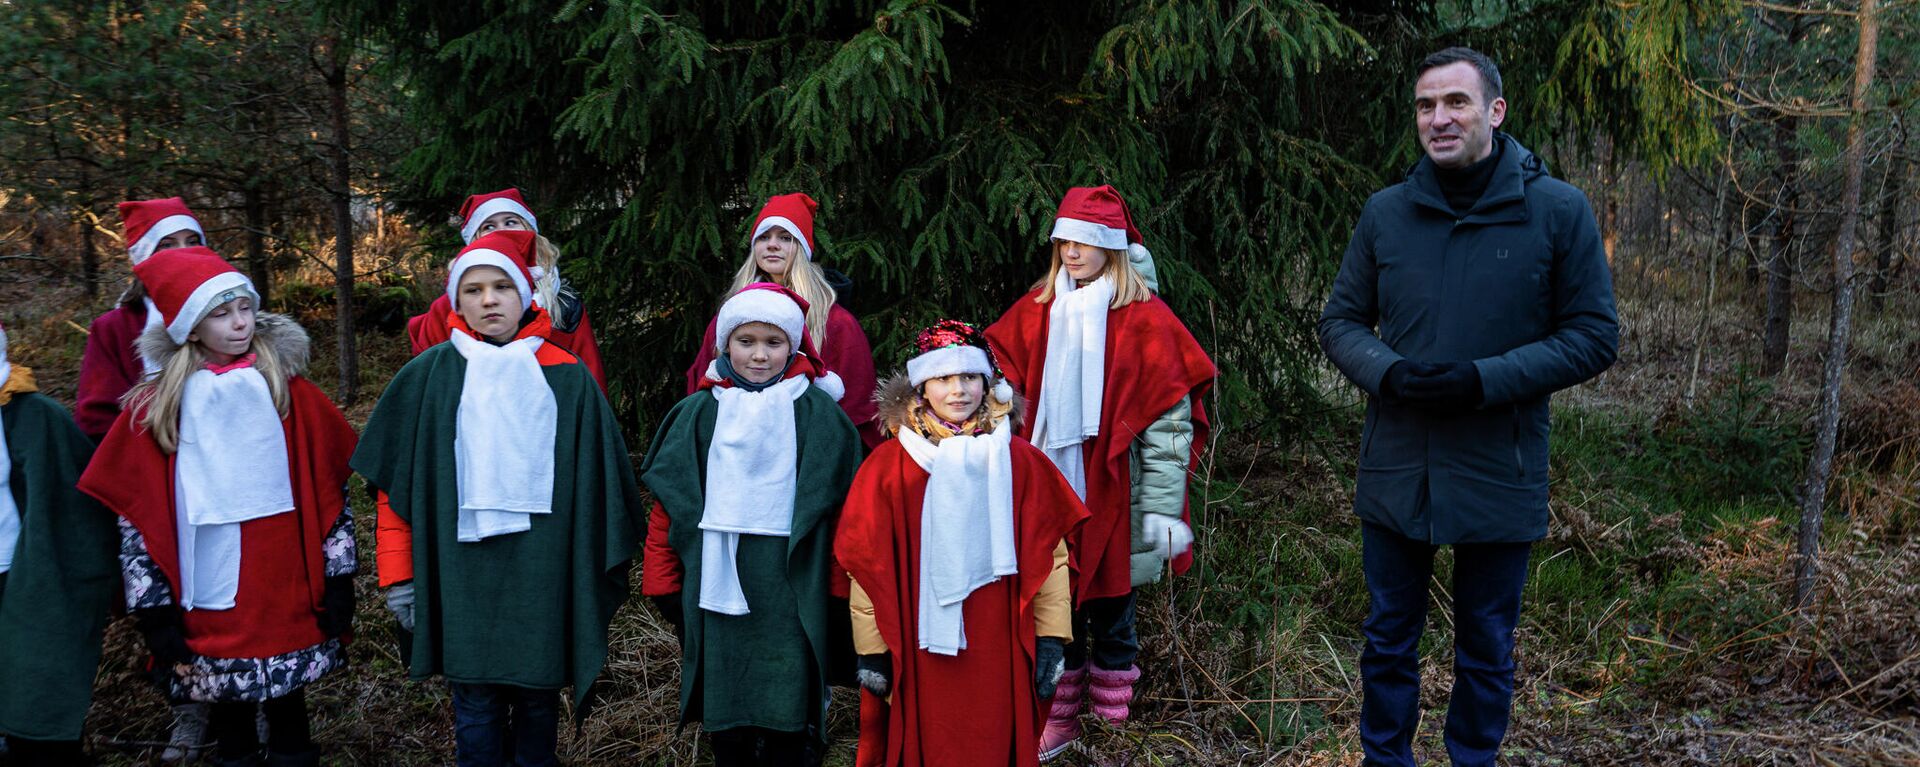 Мэр Риги Мартиньш Стакис вместе с детьми выбрал рождественские елки для Риги - Sputnik Латвия, 1920, 22.11.2021